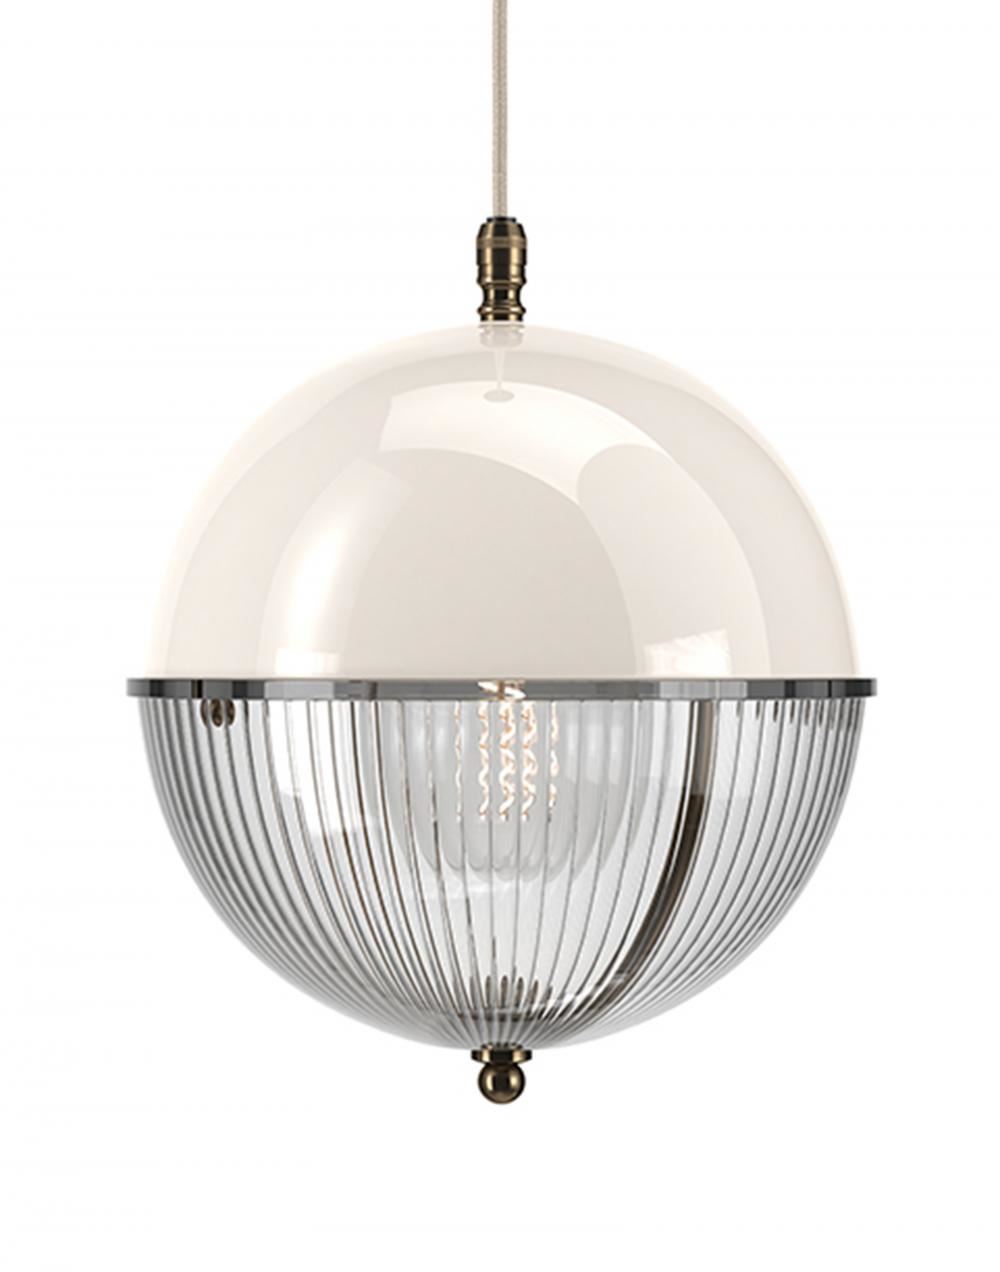 Fritz Fryer Grafton Globe Pendant Antique Brass White Skinny White Designer Pendant Lighting